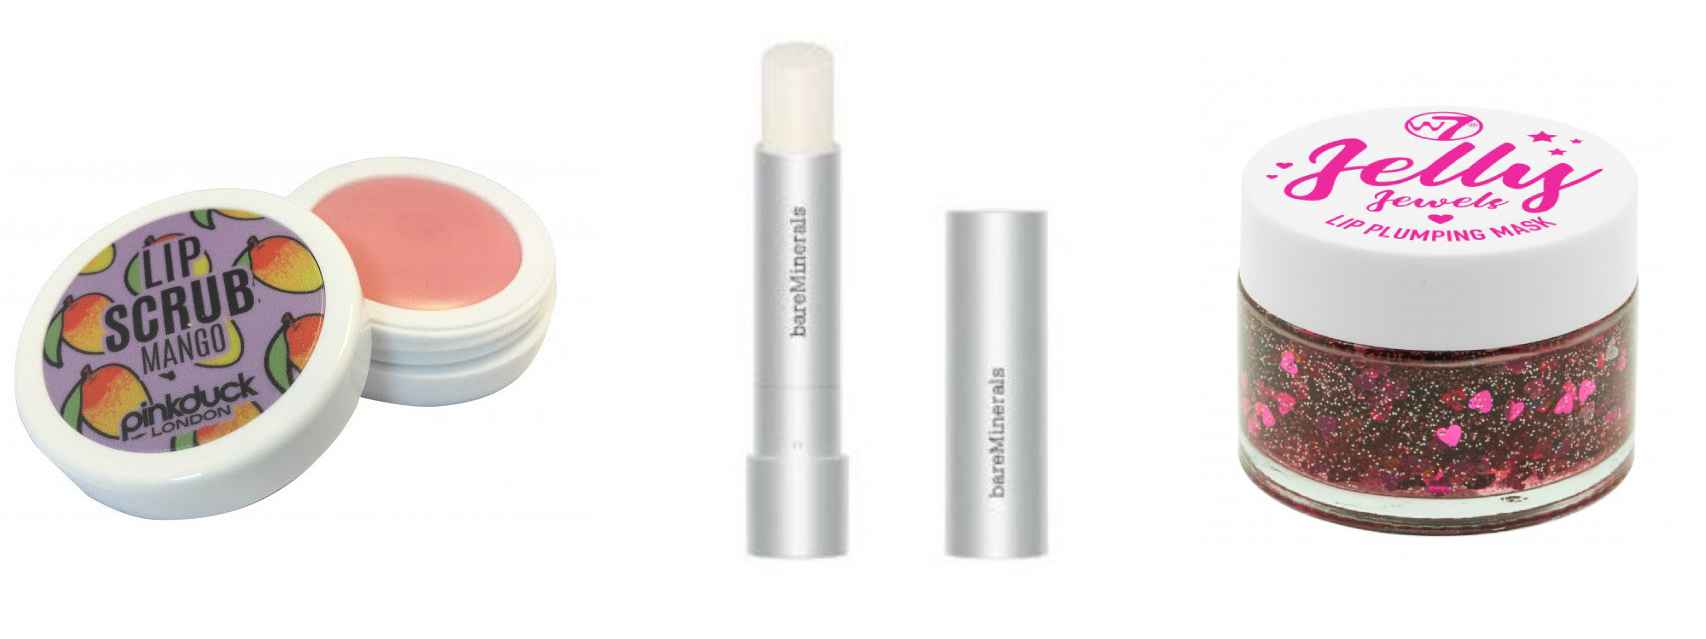 La rutina 'beauty' para los labios requiere de tres productos: un exfoliante, un bálsamo y una mascarilla.